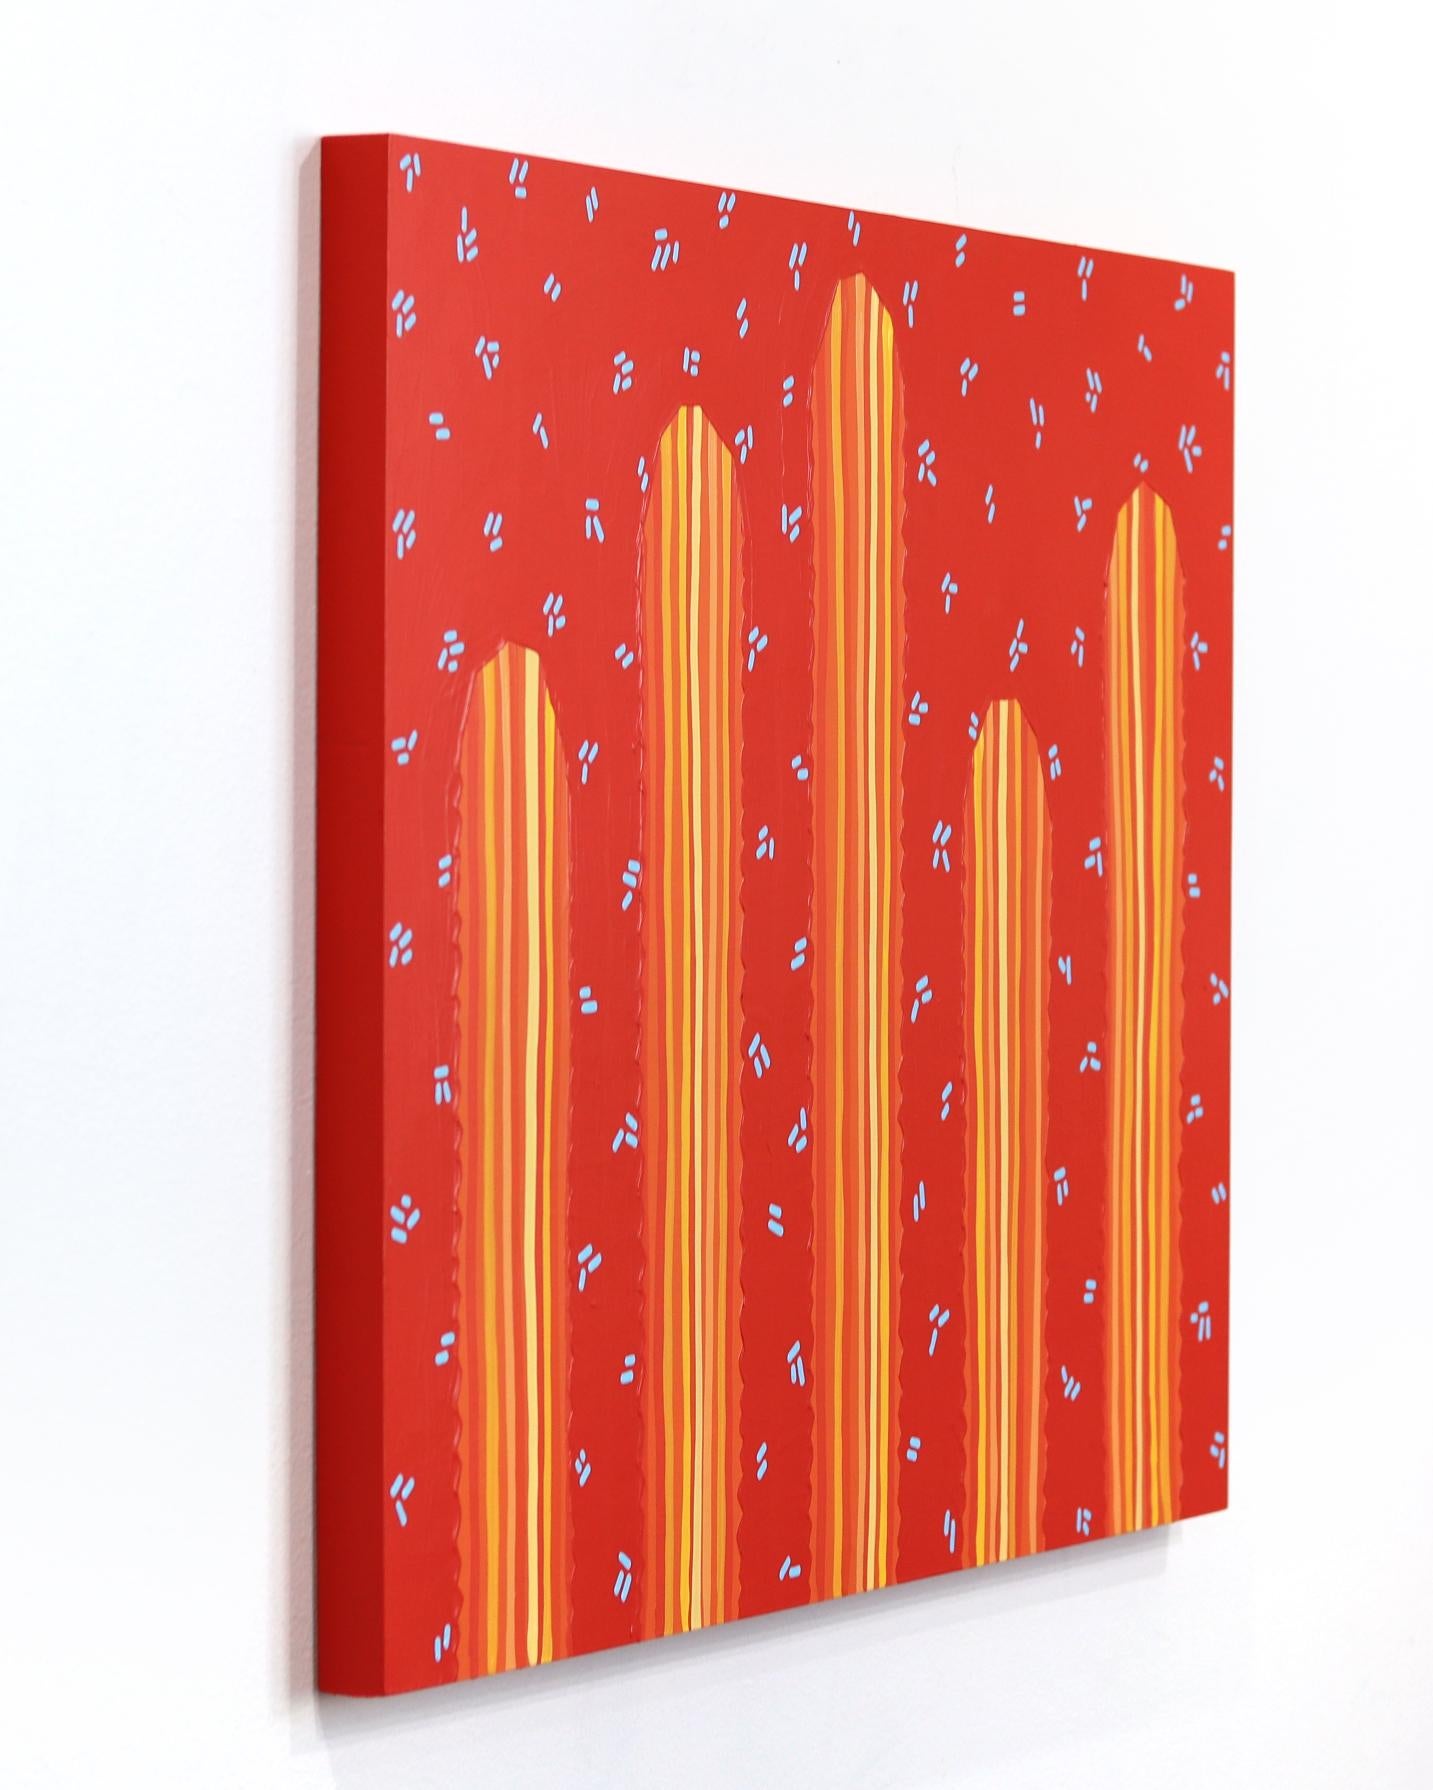 Sedona - Peinture de cactus d'inspiration Pop Art d'inspiration Sud-Ouest rouge orange vif - Rouge Landscape Painting par Will Beger